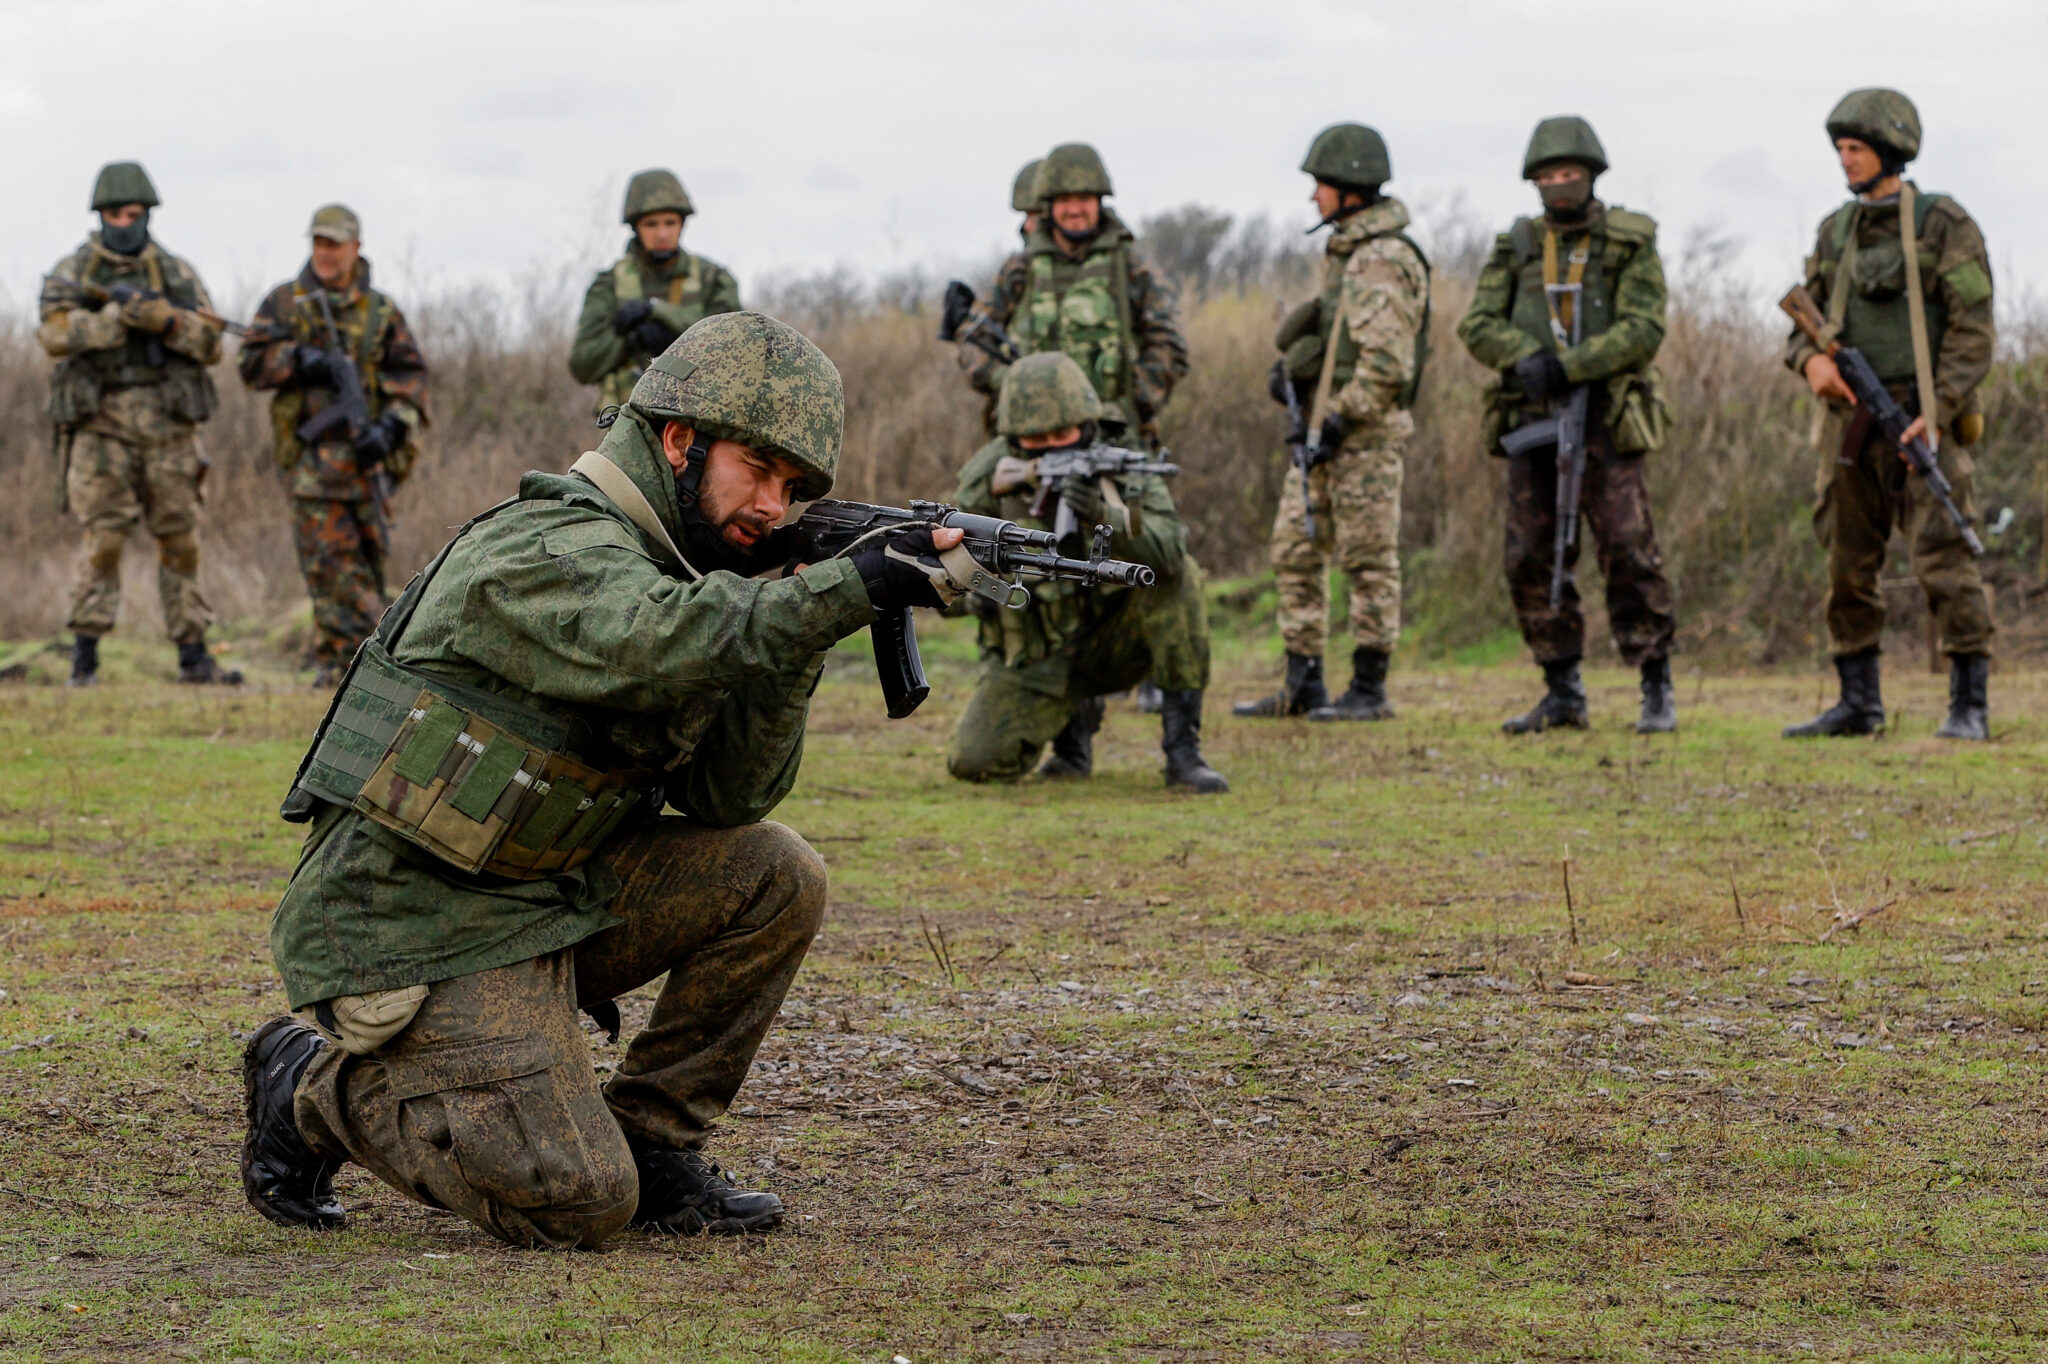 Недавно мобилизованные россияне на полигоне при подготовке перед отправкой на фронт в Украину. Фото Alexander Ermochenko/REUTERS/Scanpix/Leta